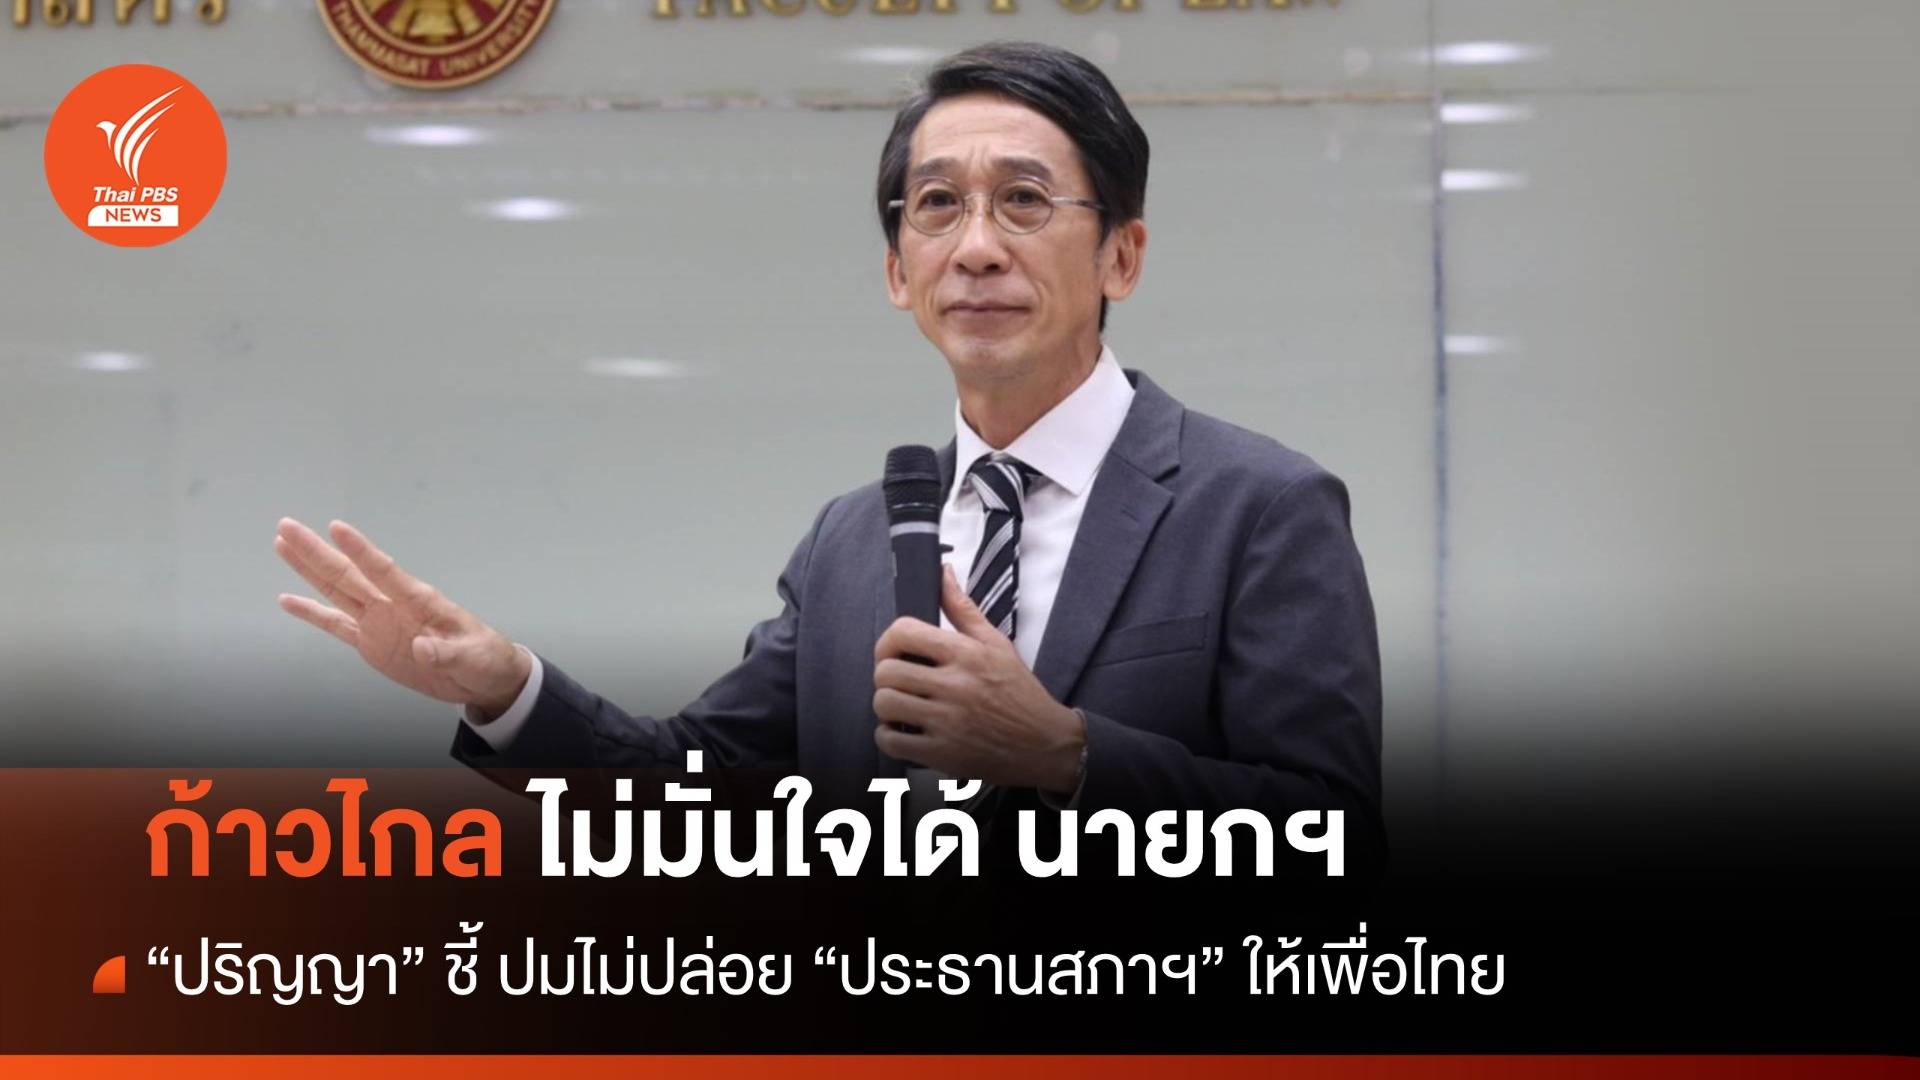 "ปริญญา" ชี้ ก้าวไกลไม่มั่นใจได้ "นายกฯ" ปมไม่ปล่อย "ประธานสภาฯ" ให้เพื่อไทย